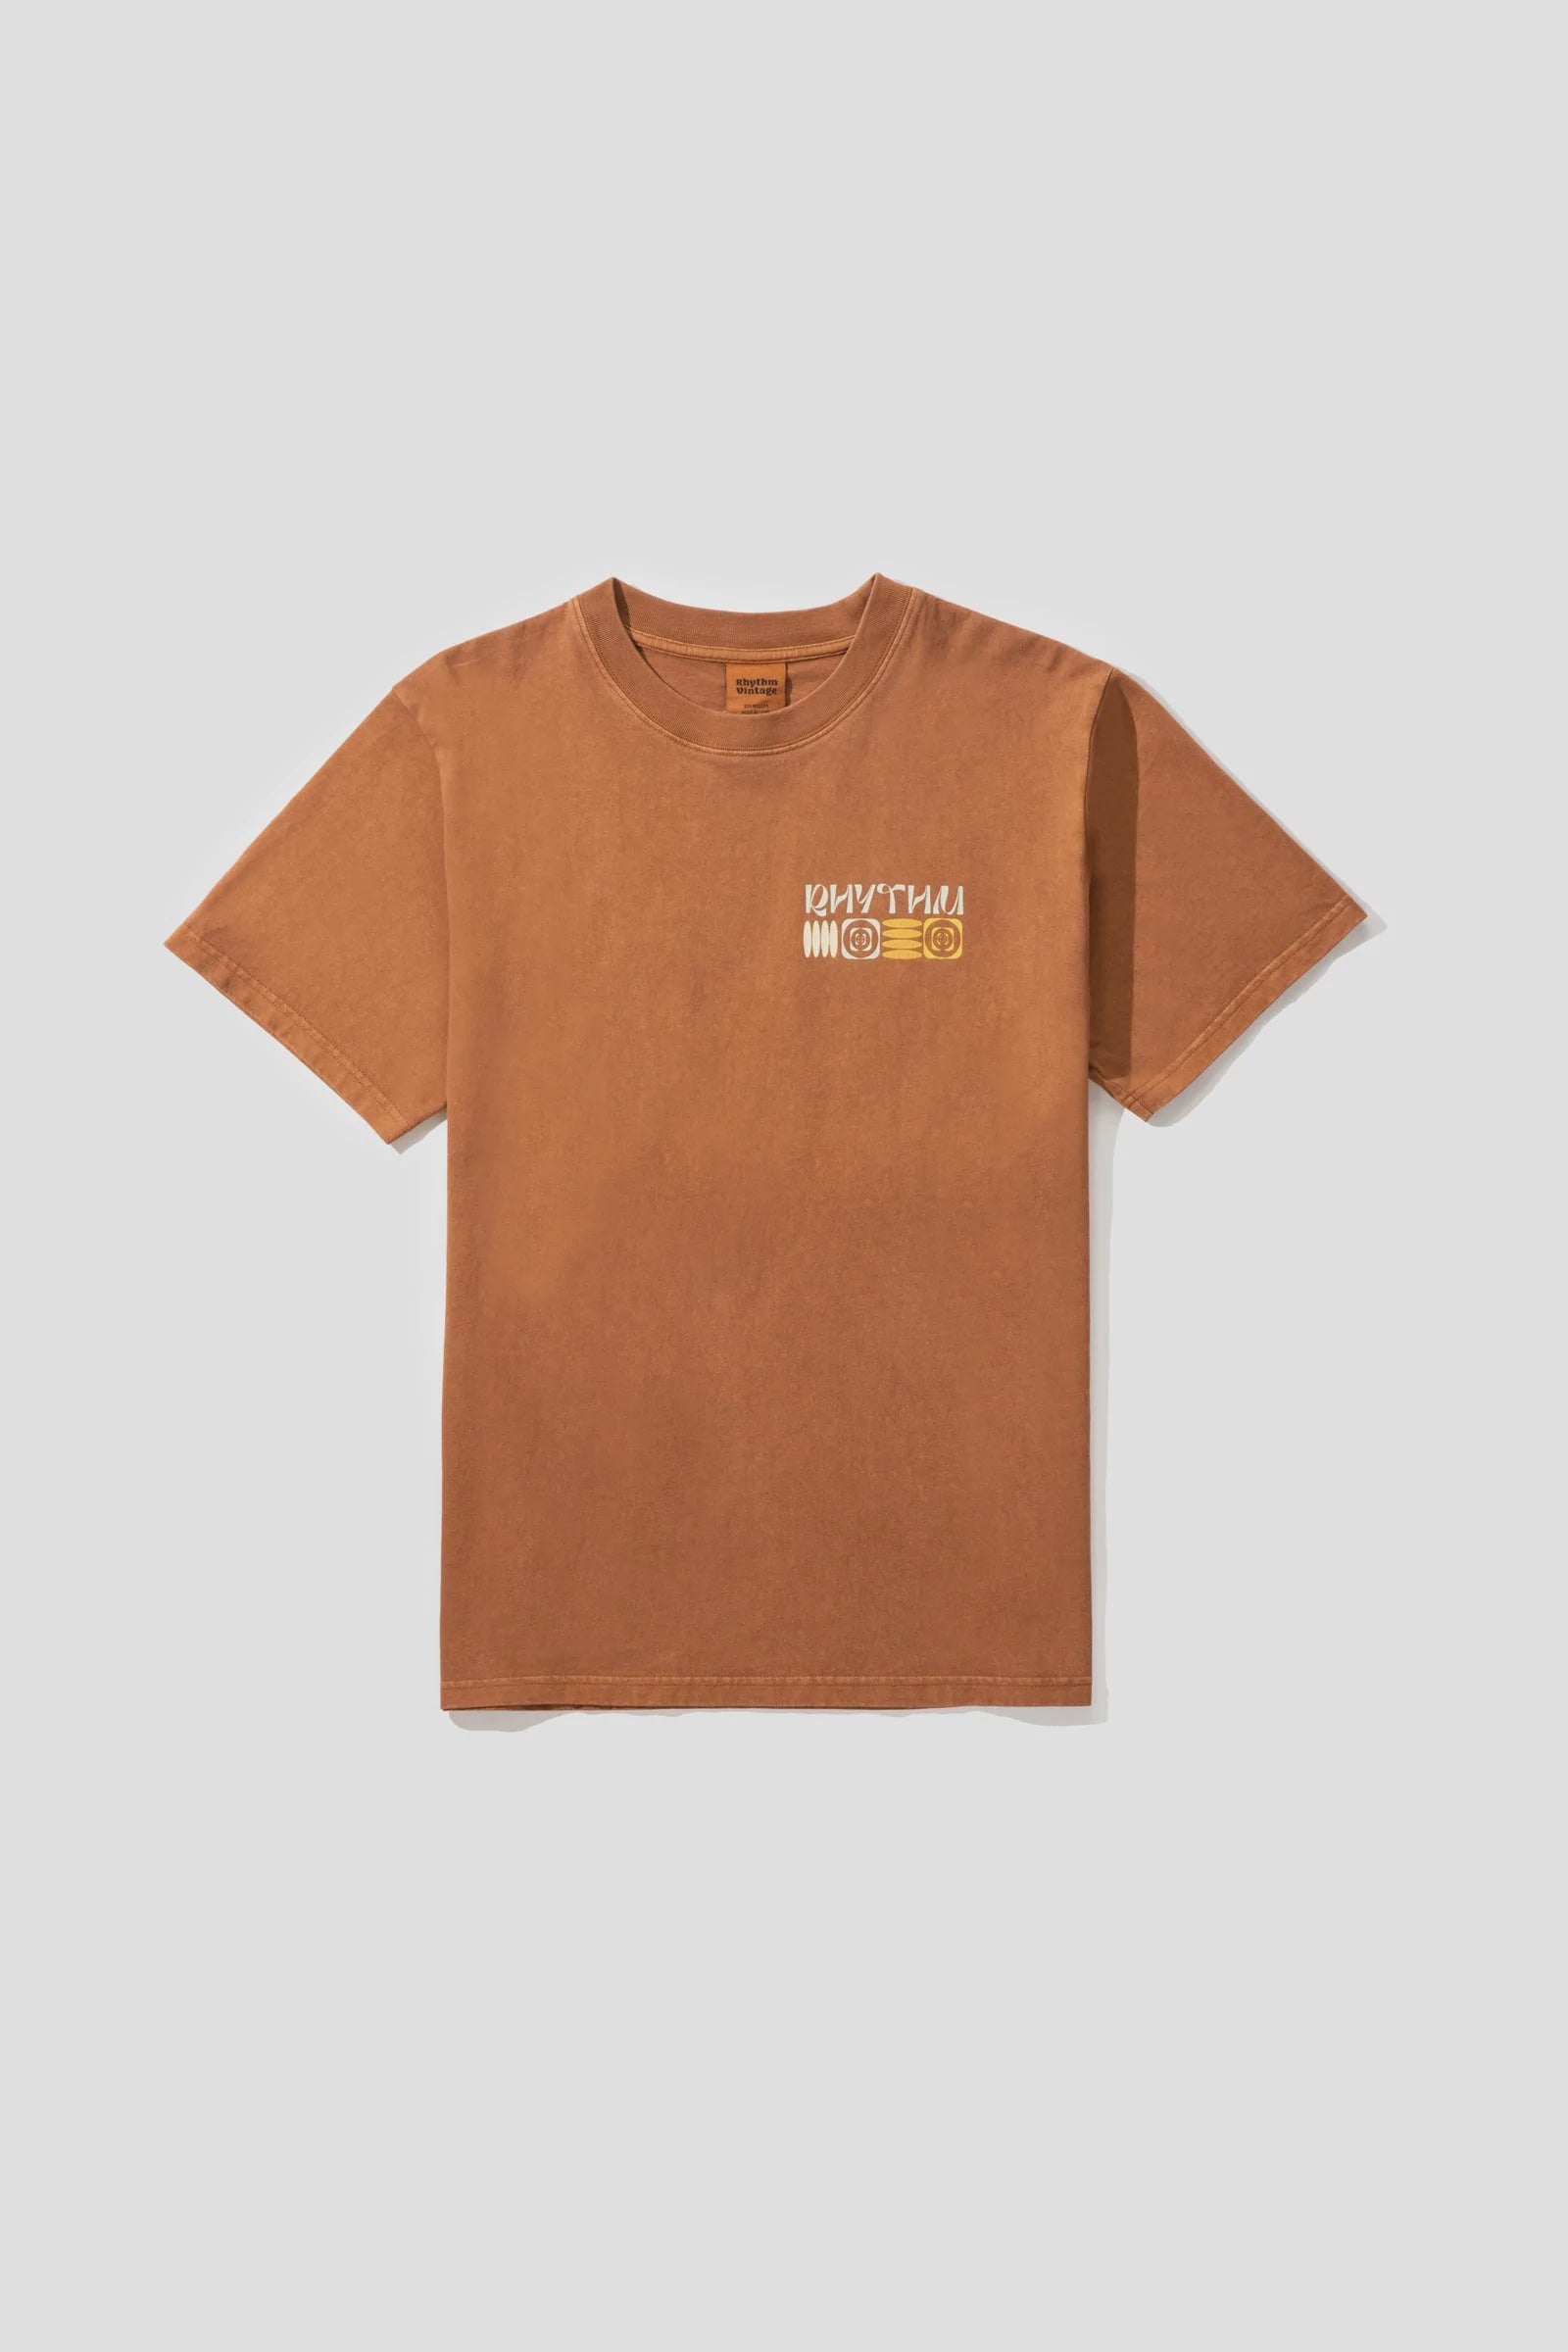 Notch Vintage SS T-Shirt